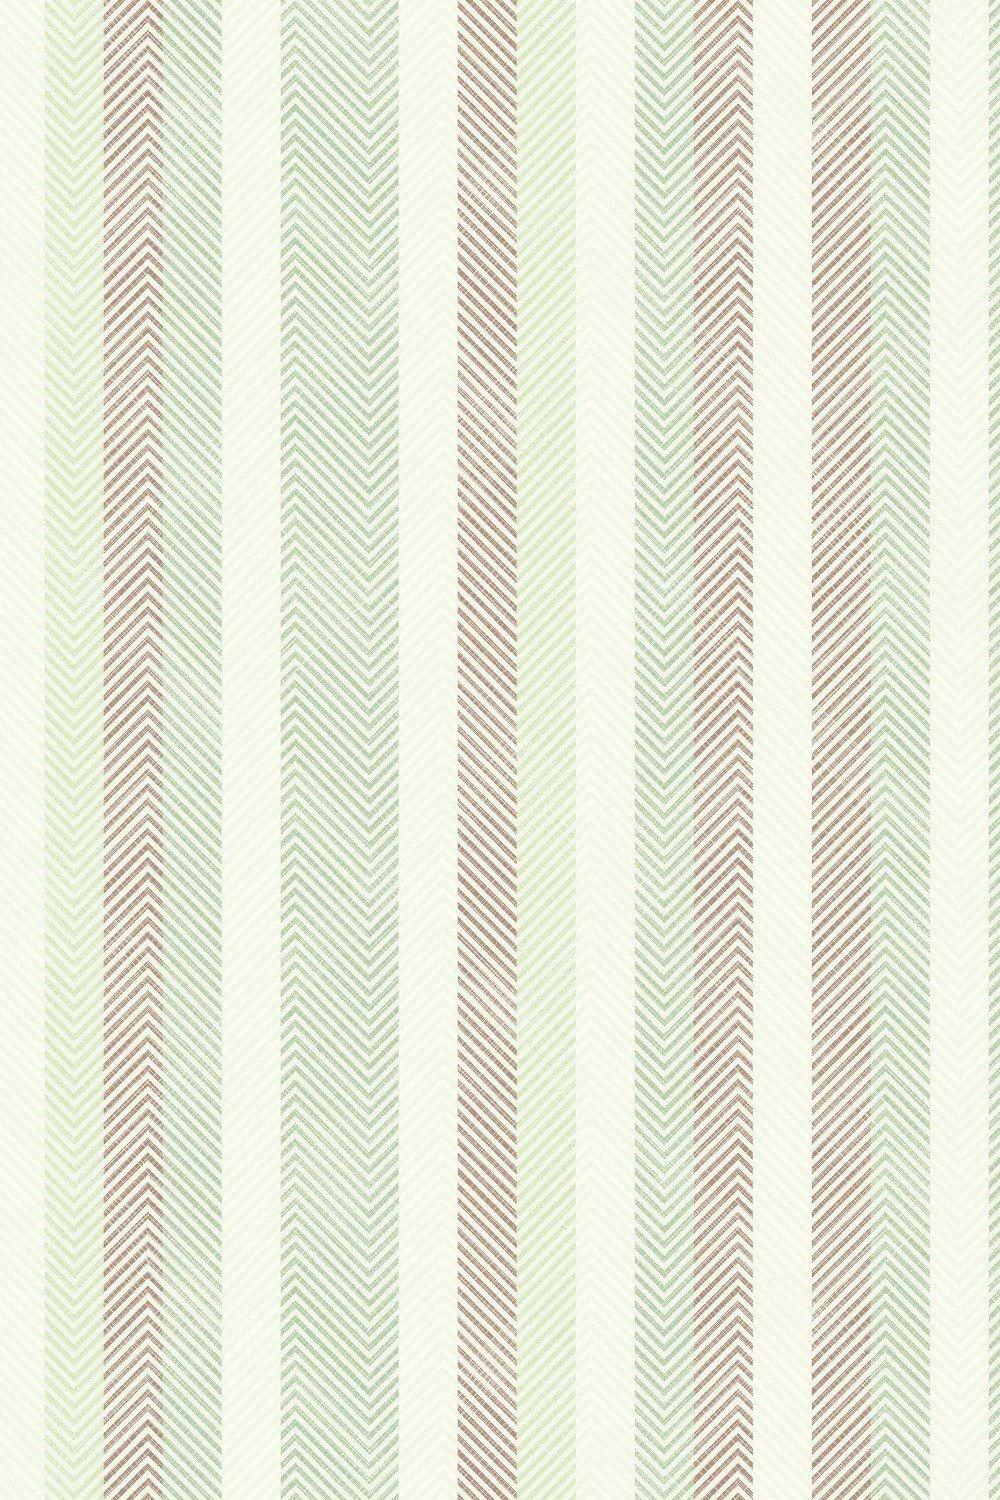 Eco-Friendly Zig Zag Stripe Wallpaper